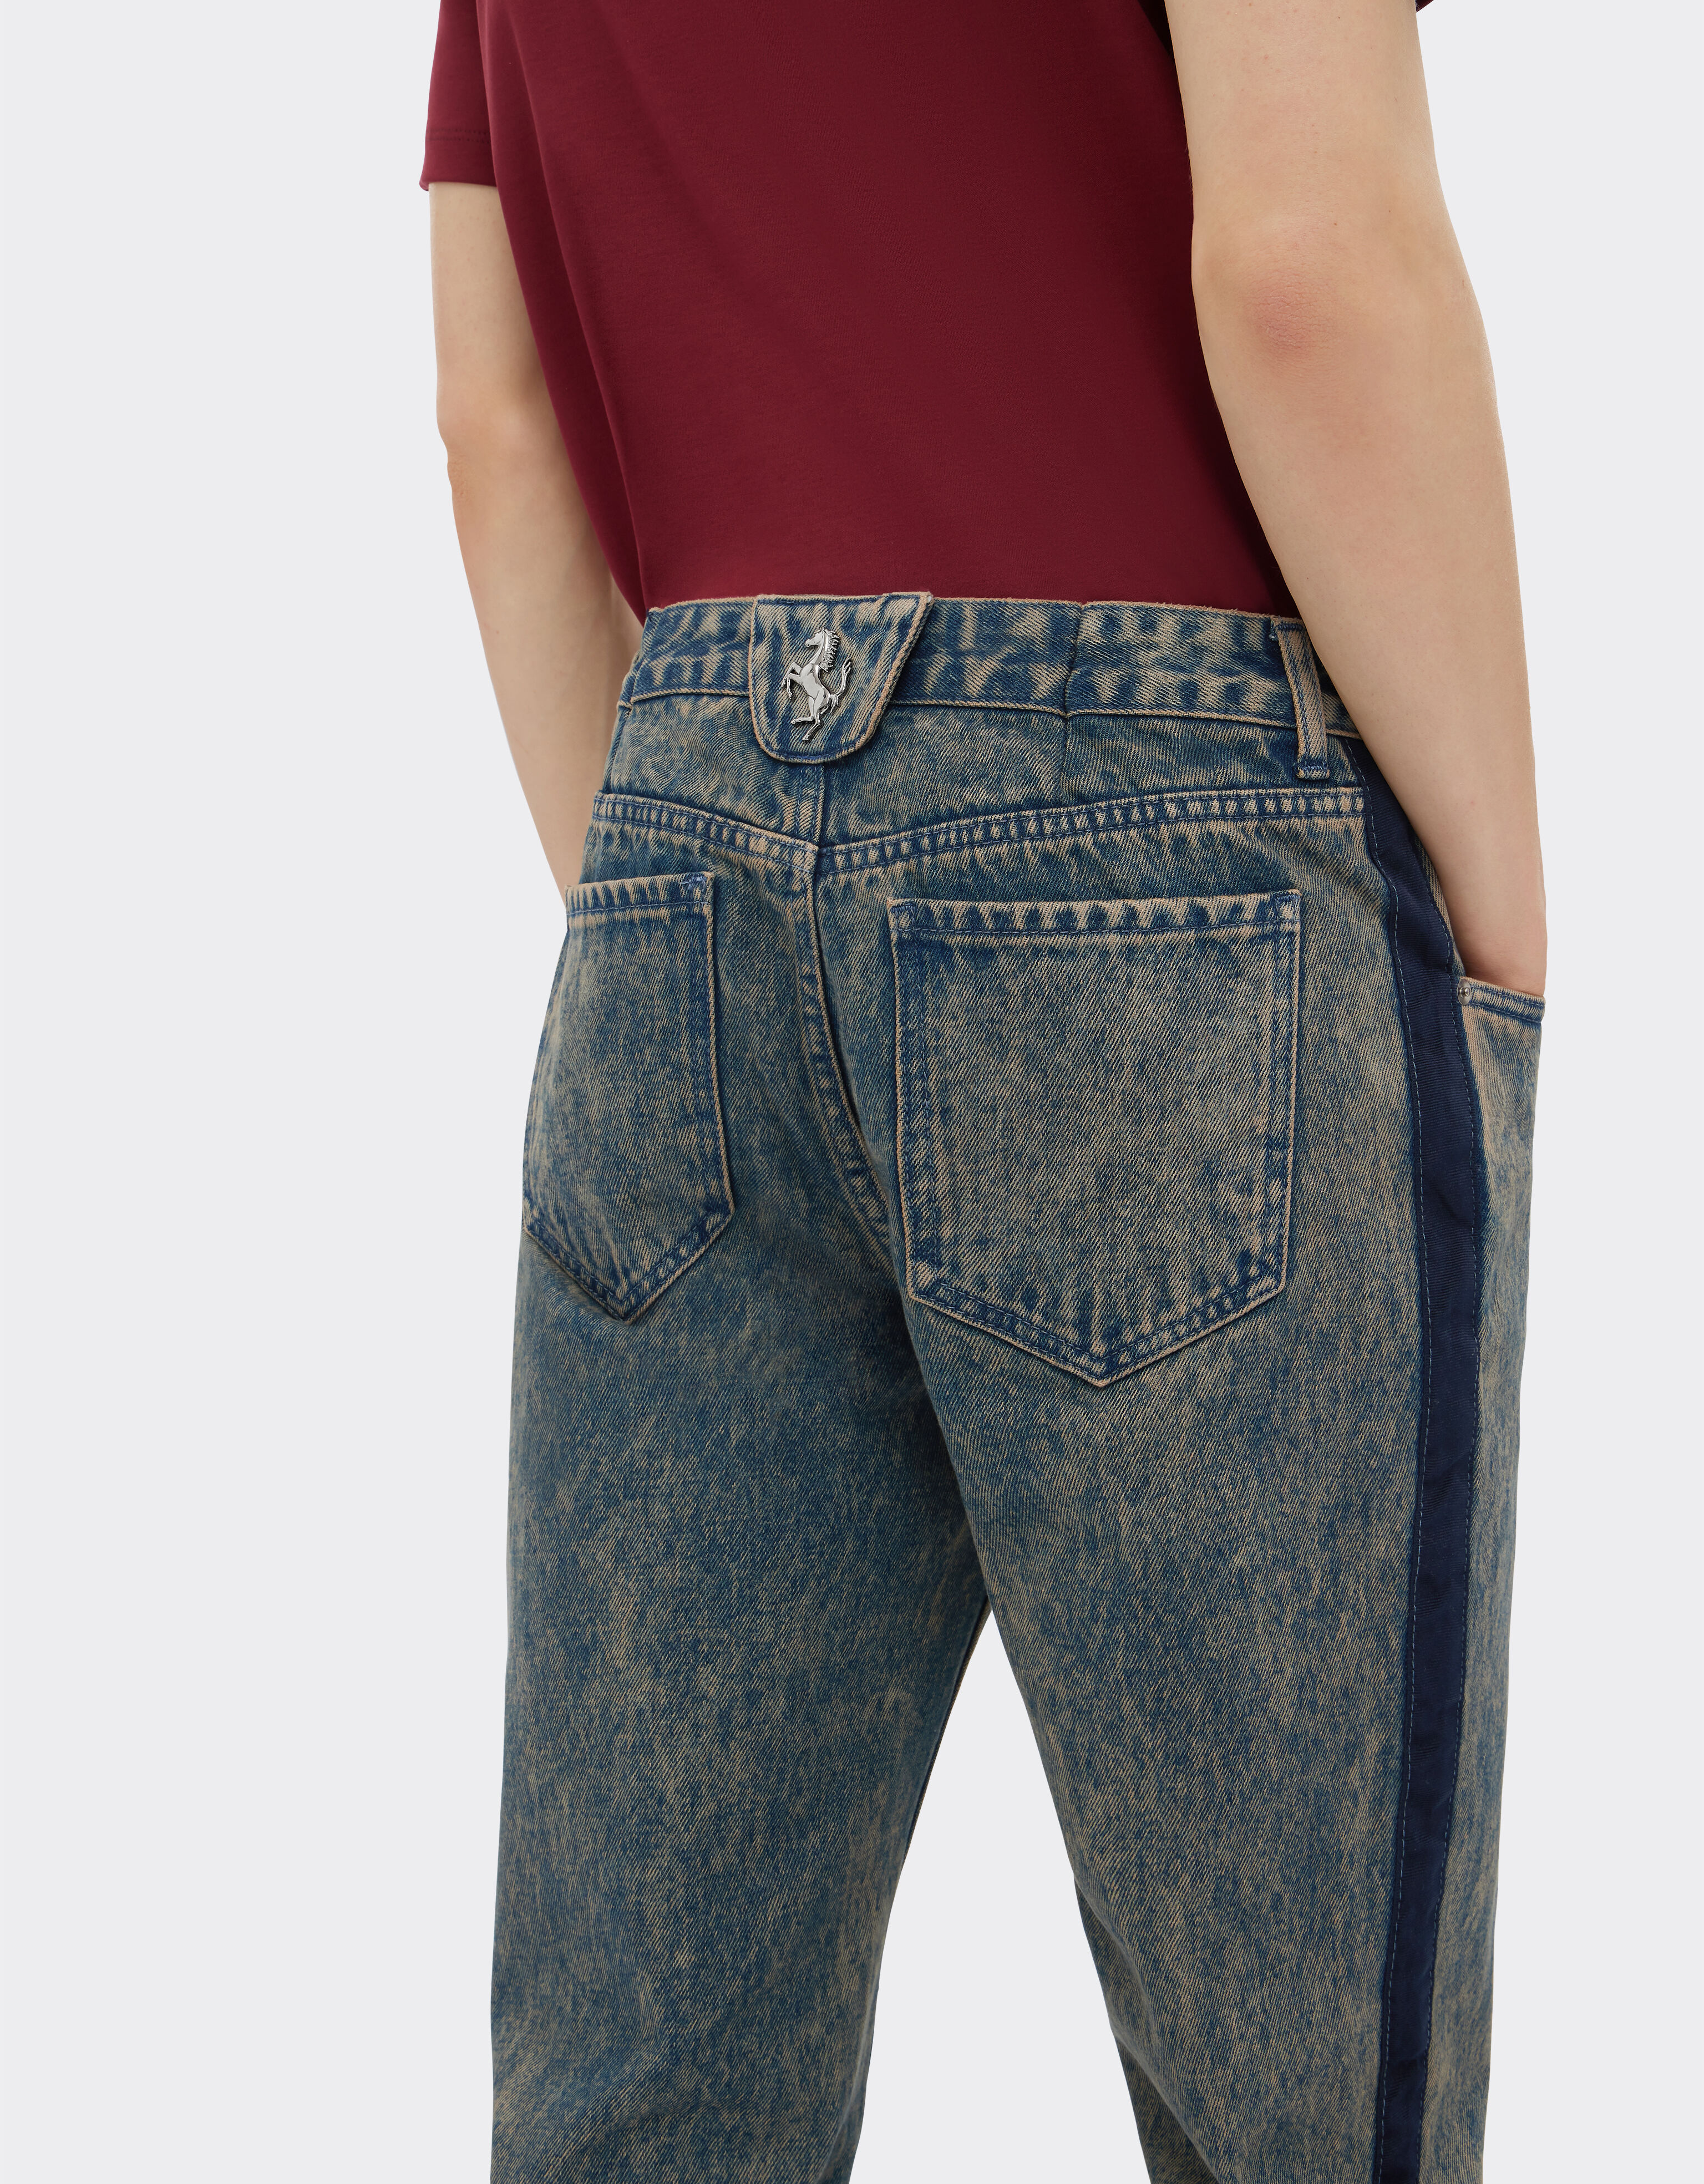 Ferrari Pantalone jeans con tintura effetto marmo Denim Scuro 48044f